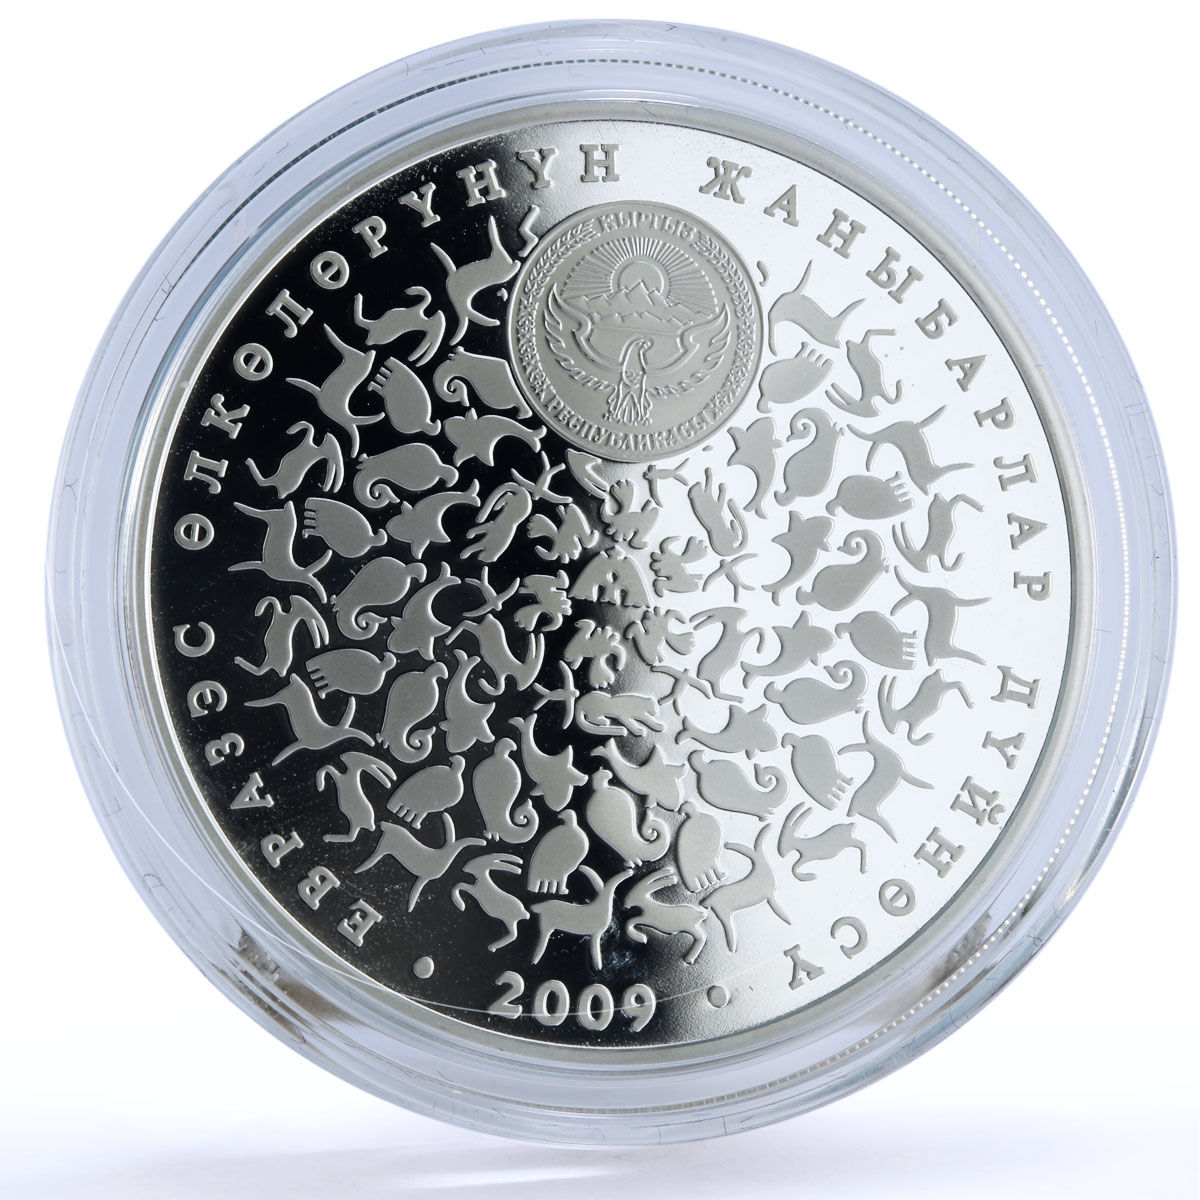 Kyrgyzstan 10 som EurAsEC Wildlife Golden Eagle Bird Fauna silver coin 2009